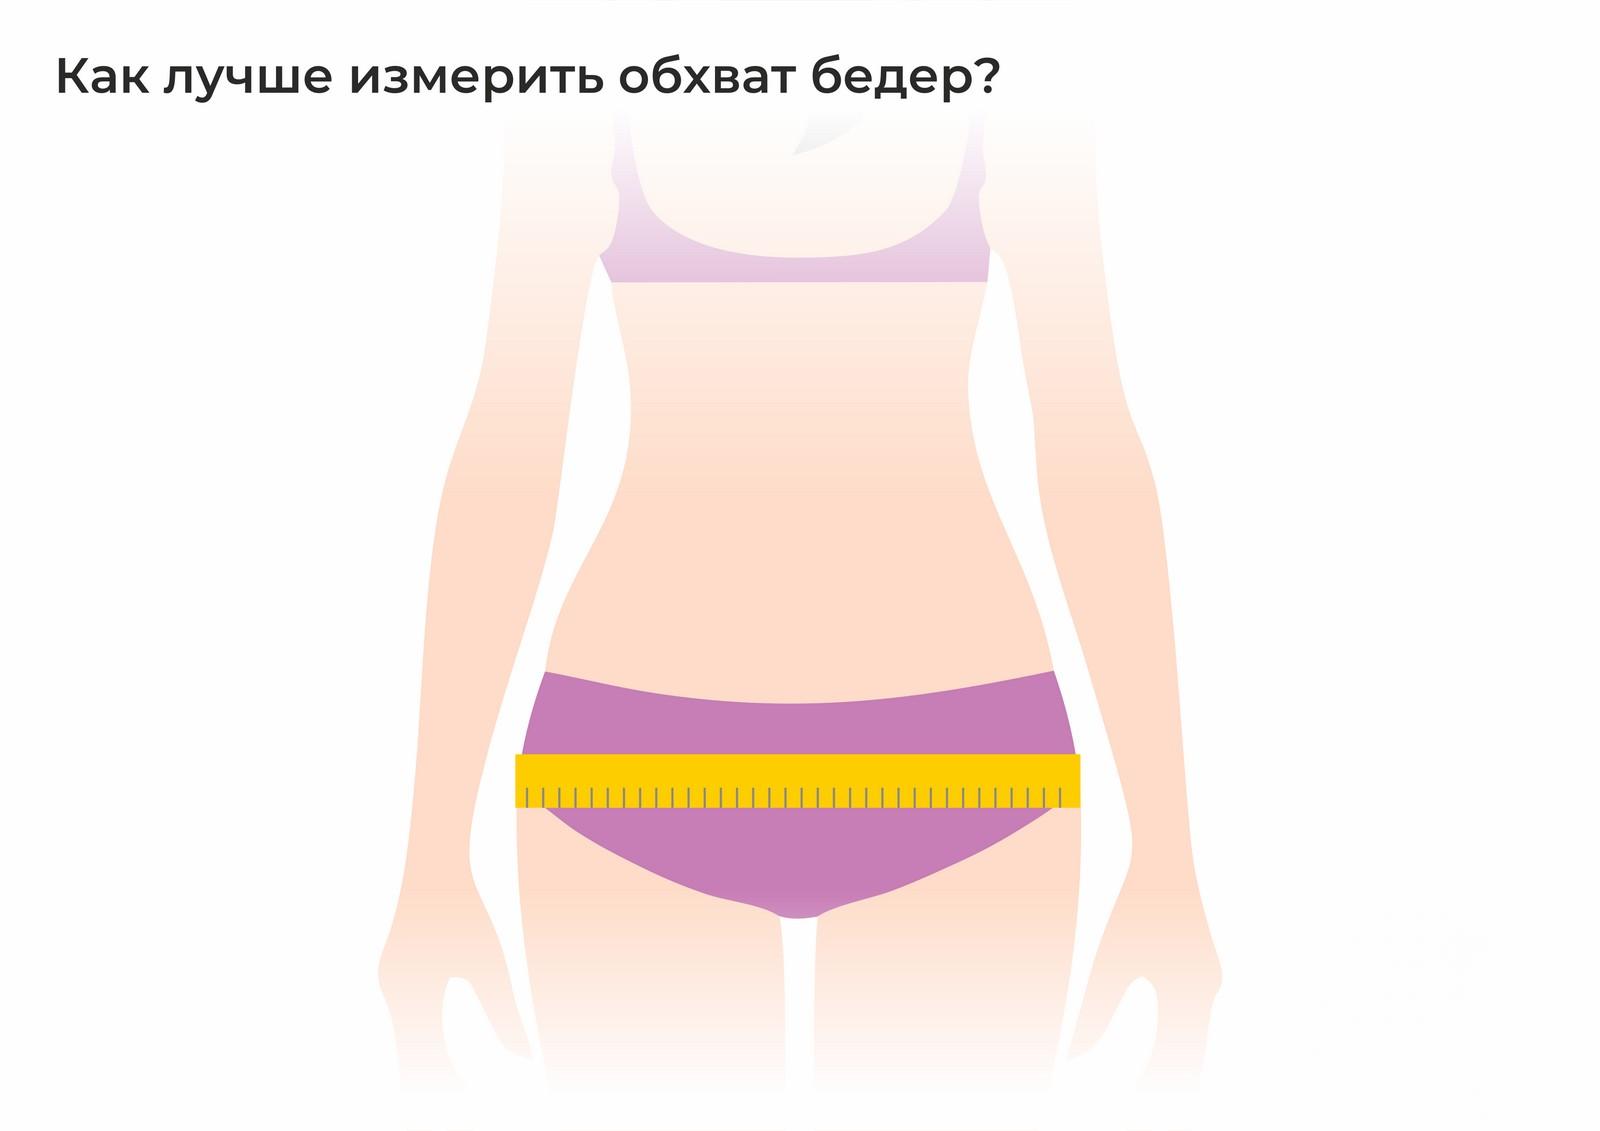 Как правильно сделать замеры тела для похудения фото